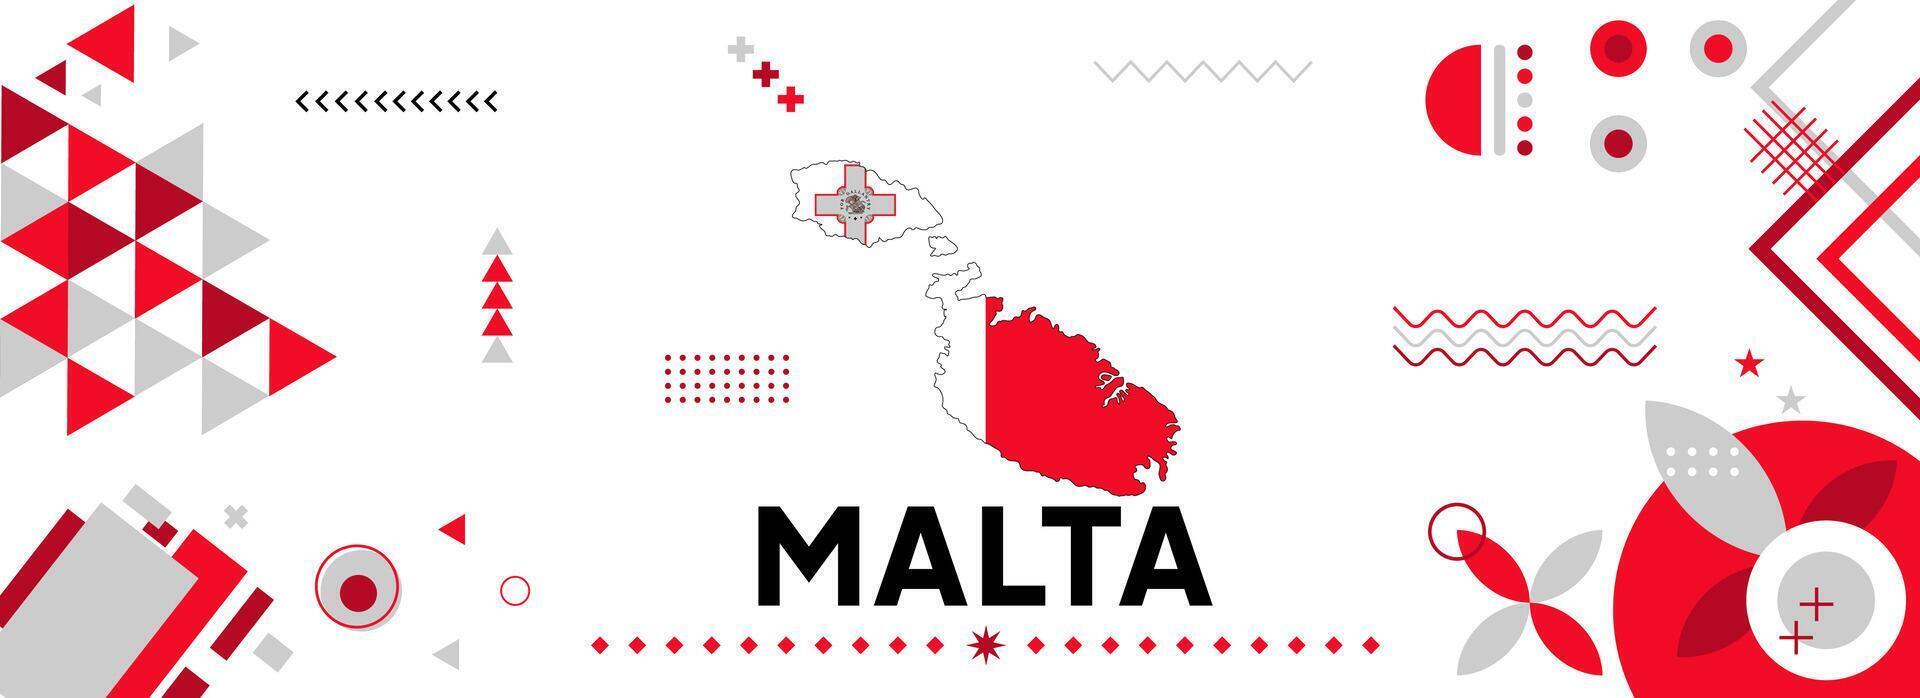 Malta National oder Unabhängigkeit Tag Banner zum Land Feier. Flagge und Karte von Malta mit modern retro Design mit Typorgaphie abstrakt geometrisch Symbole. Vektor Illustration.